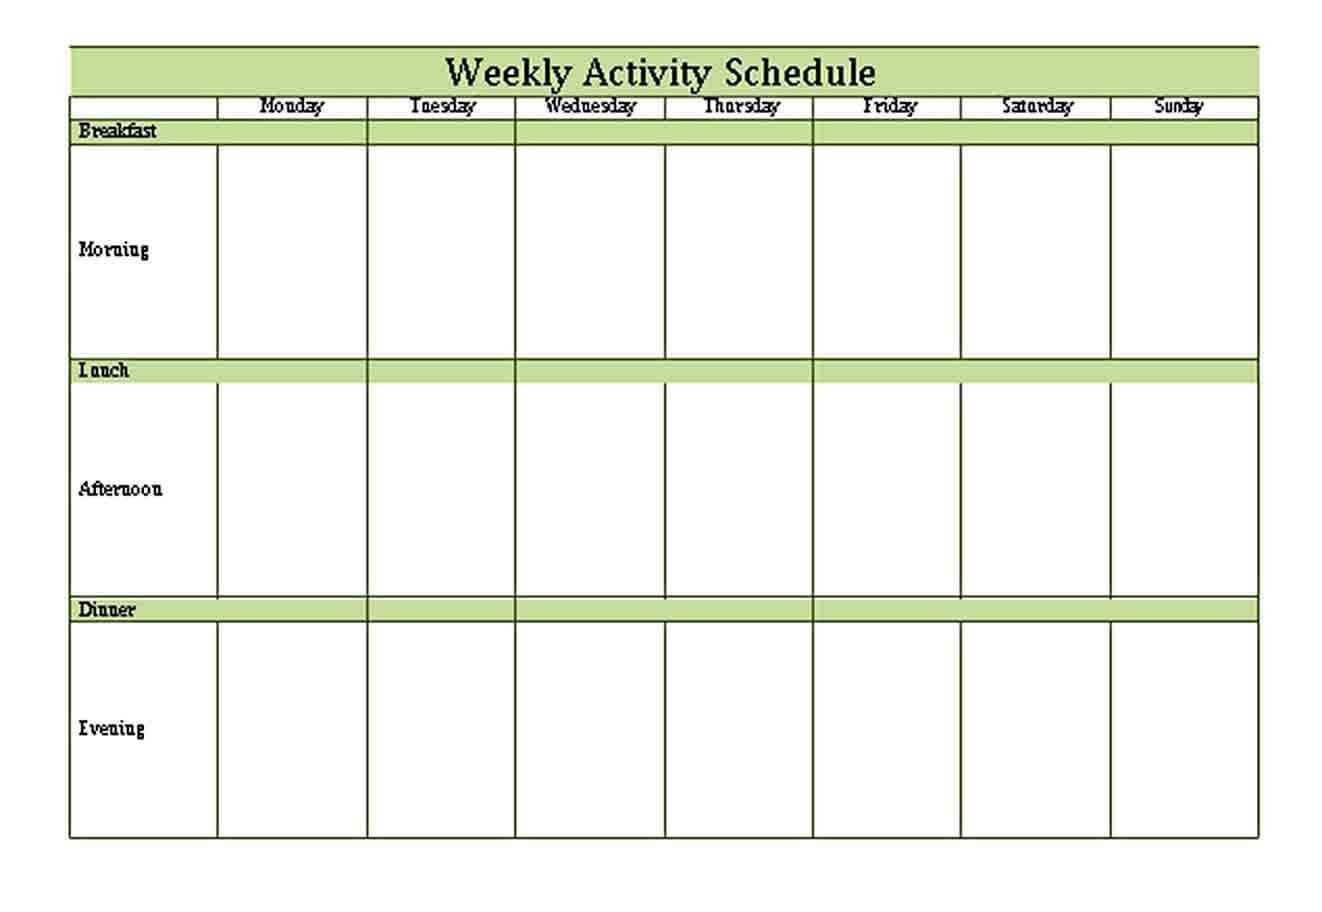 Patient Weekly Activity Schedule Template